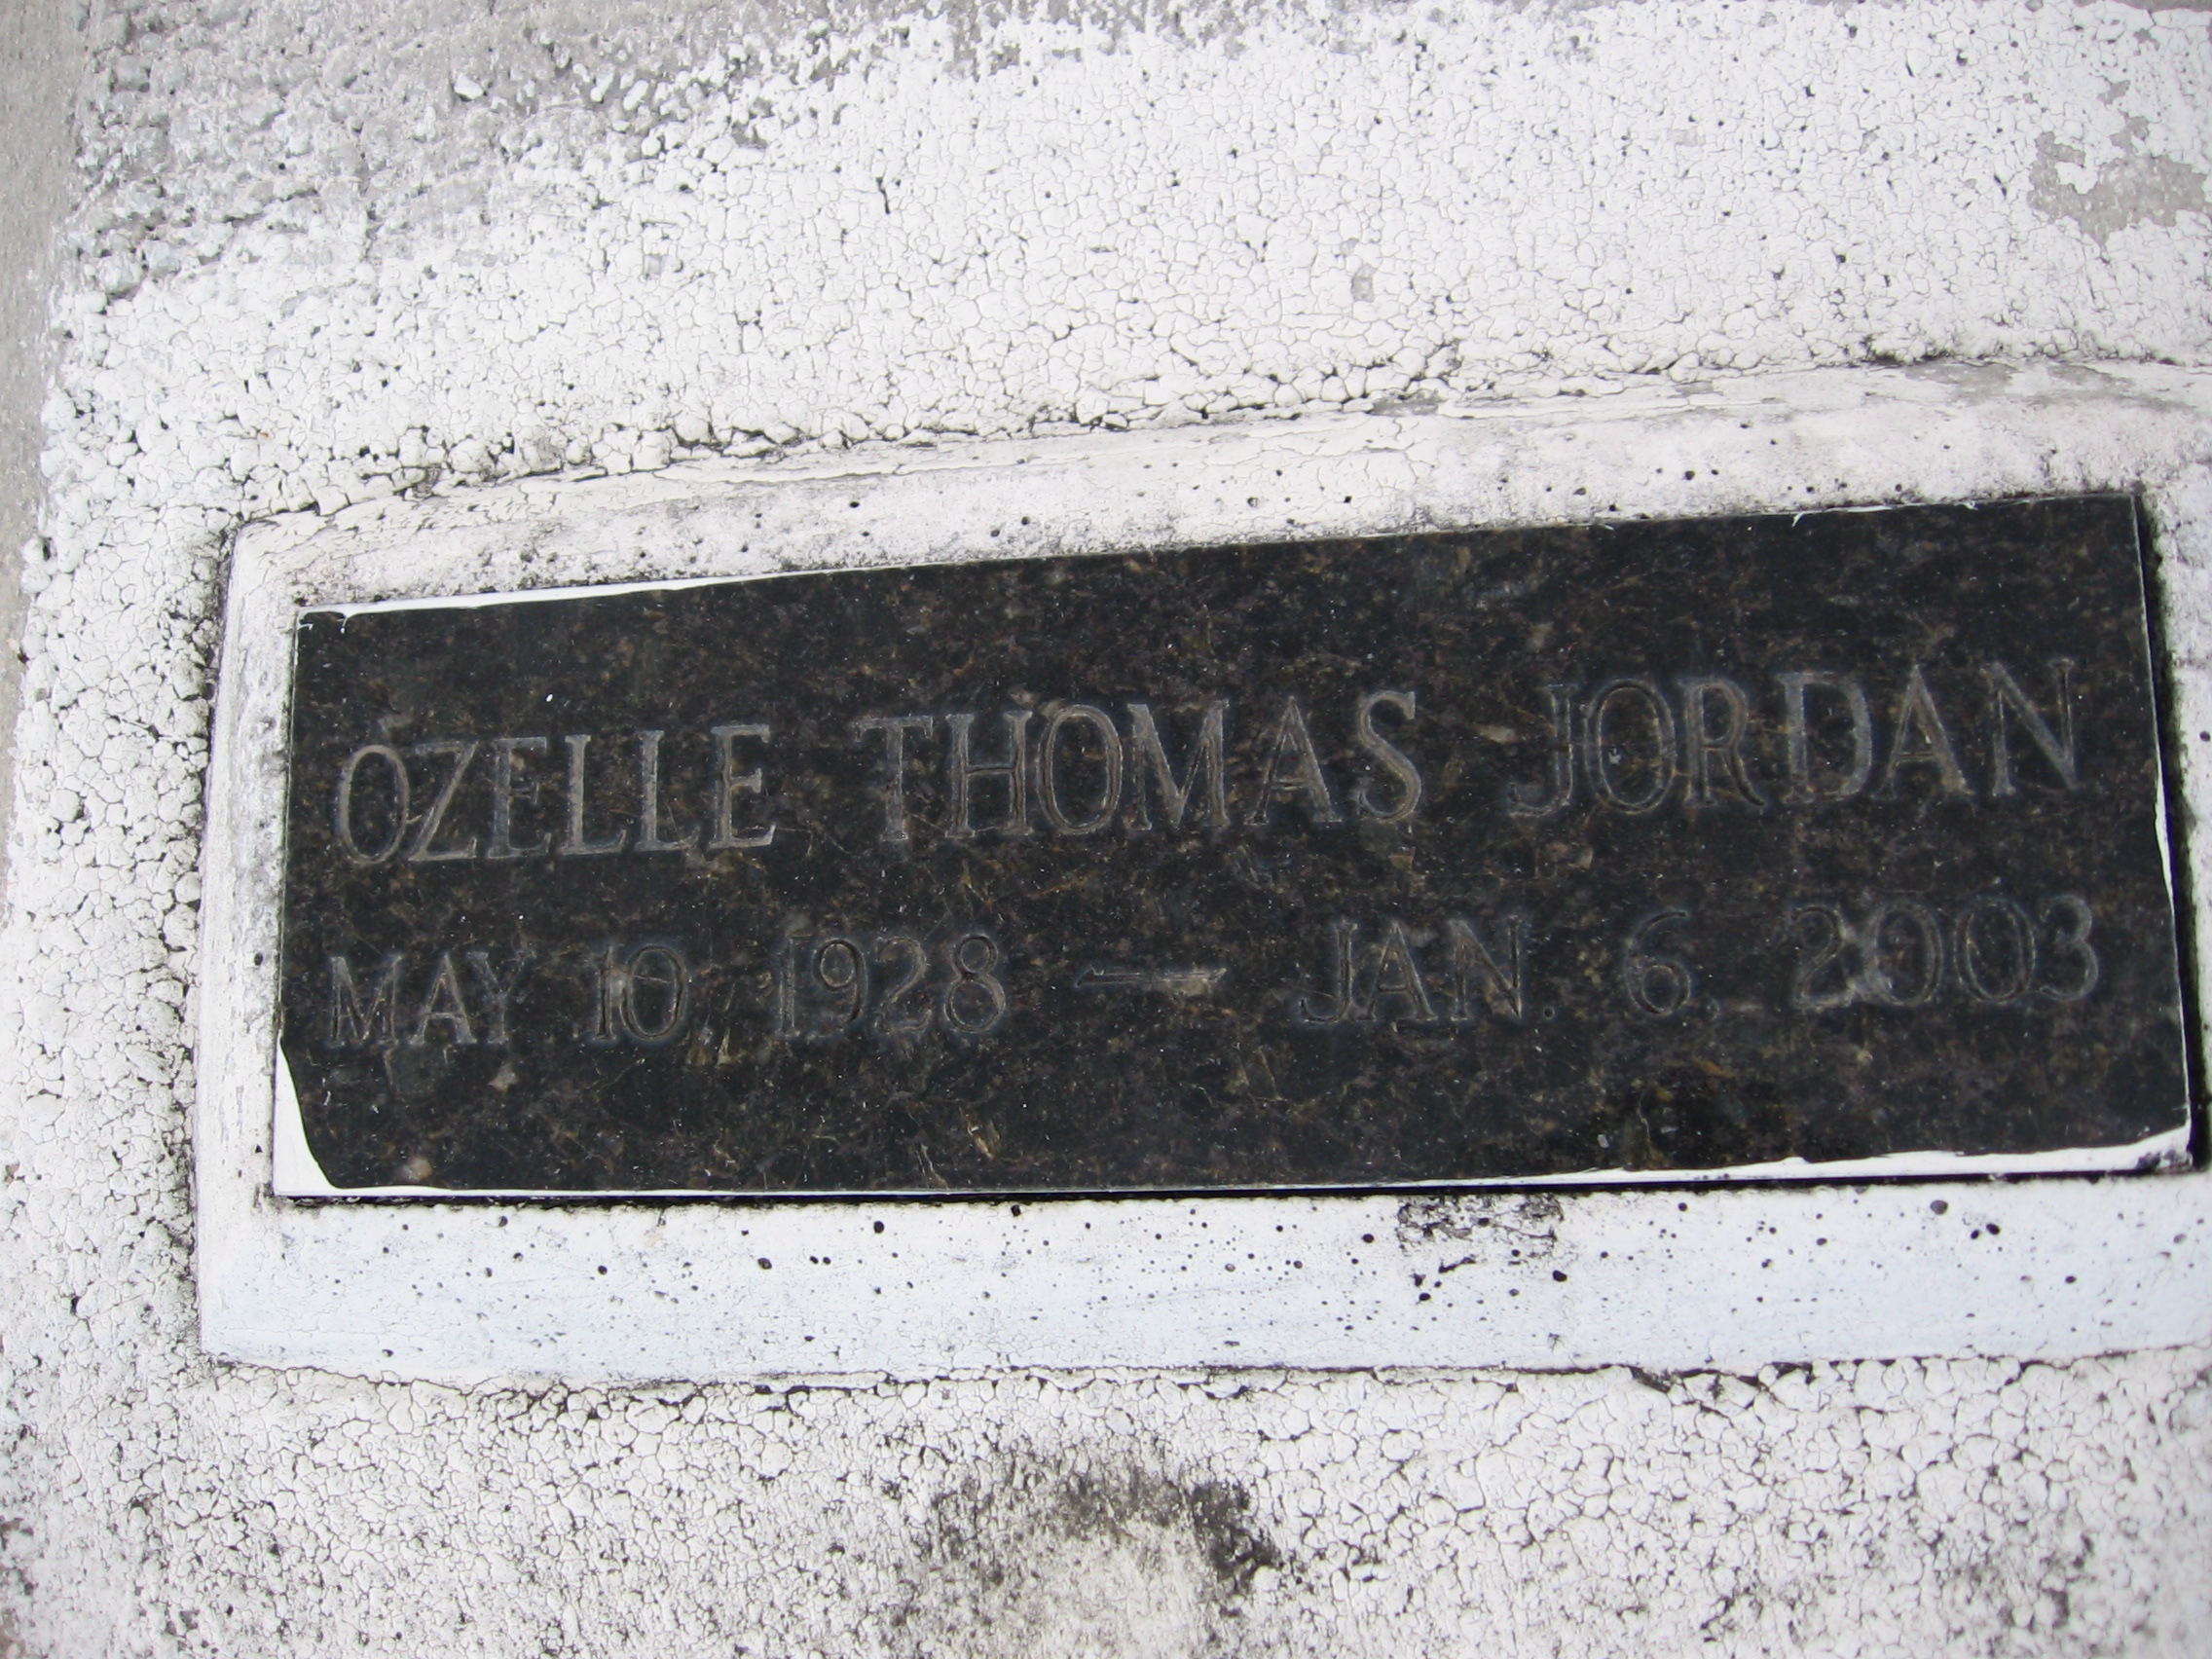 Ozelle Thomas Jordan